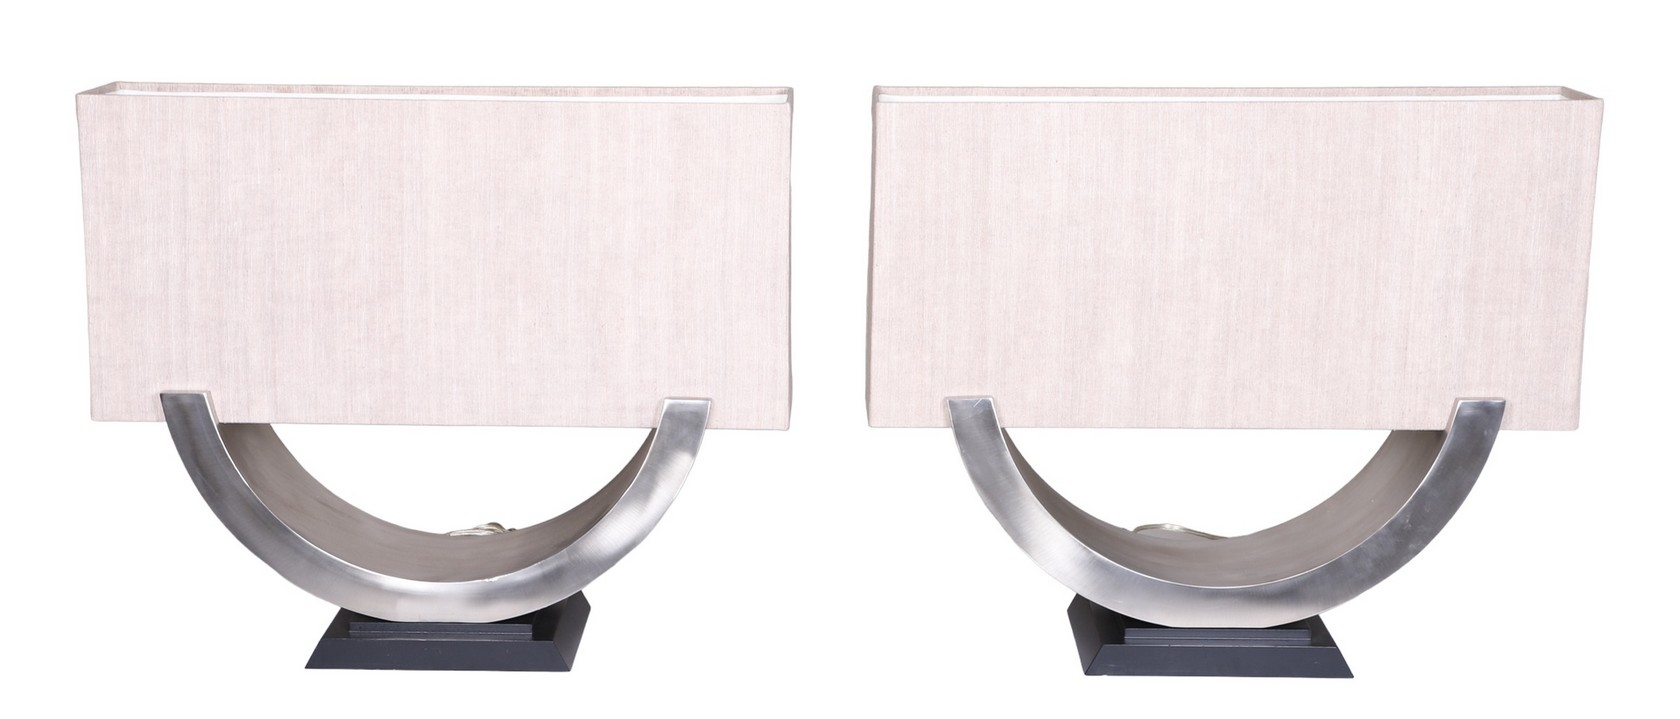 Pair Modern Design chrome table 27a35c